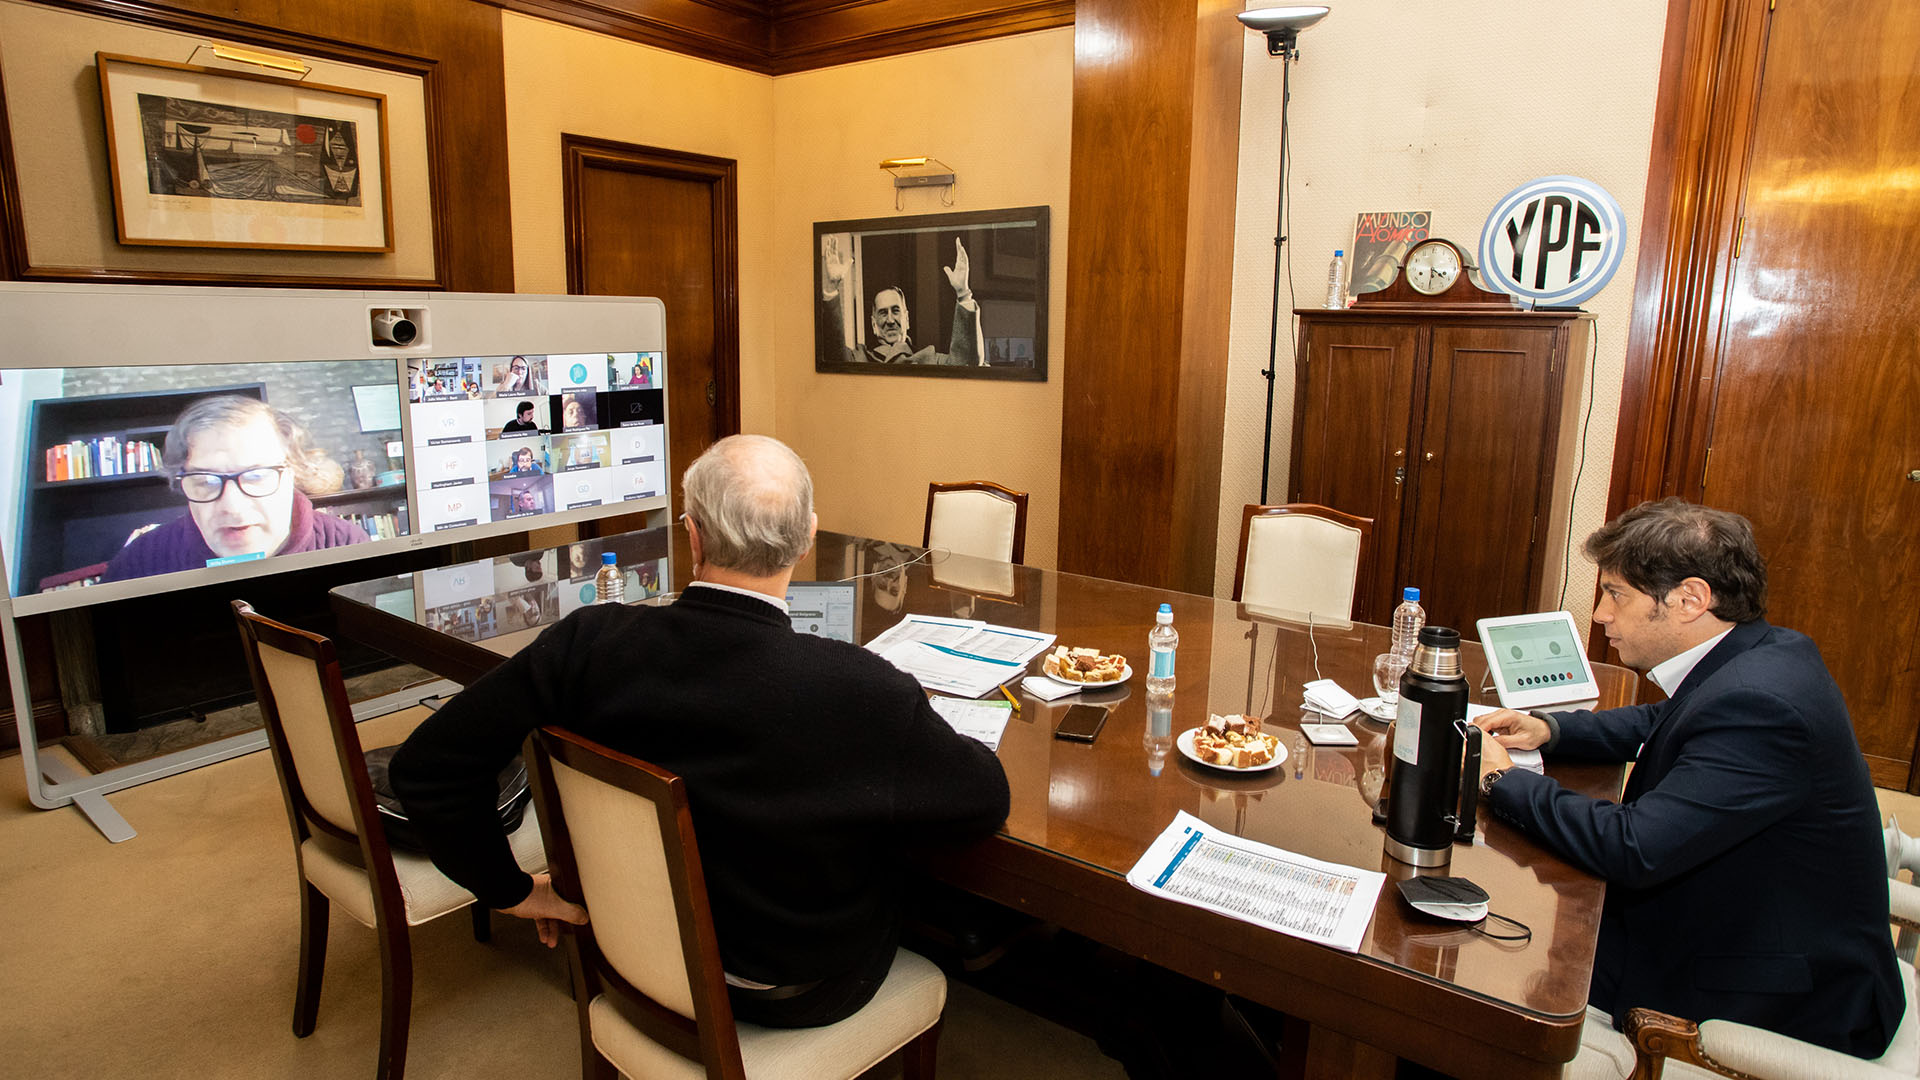 Una imagen del 28 de julio, junto al gobernador de la provincia de Buenos Aires, Axel Kicillof, en el marco de una videoconferencia con expertos (Mariano Sandá)